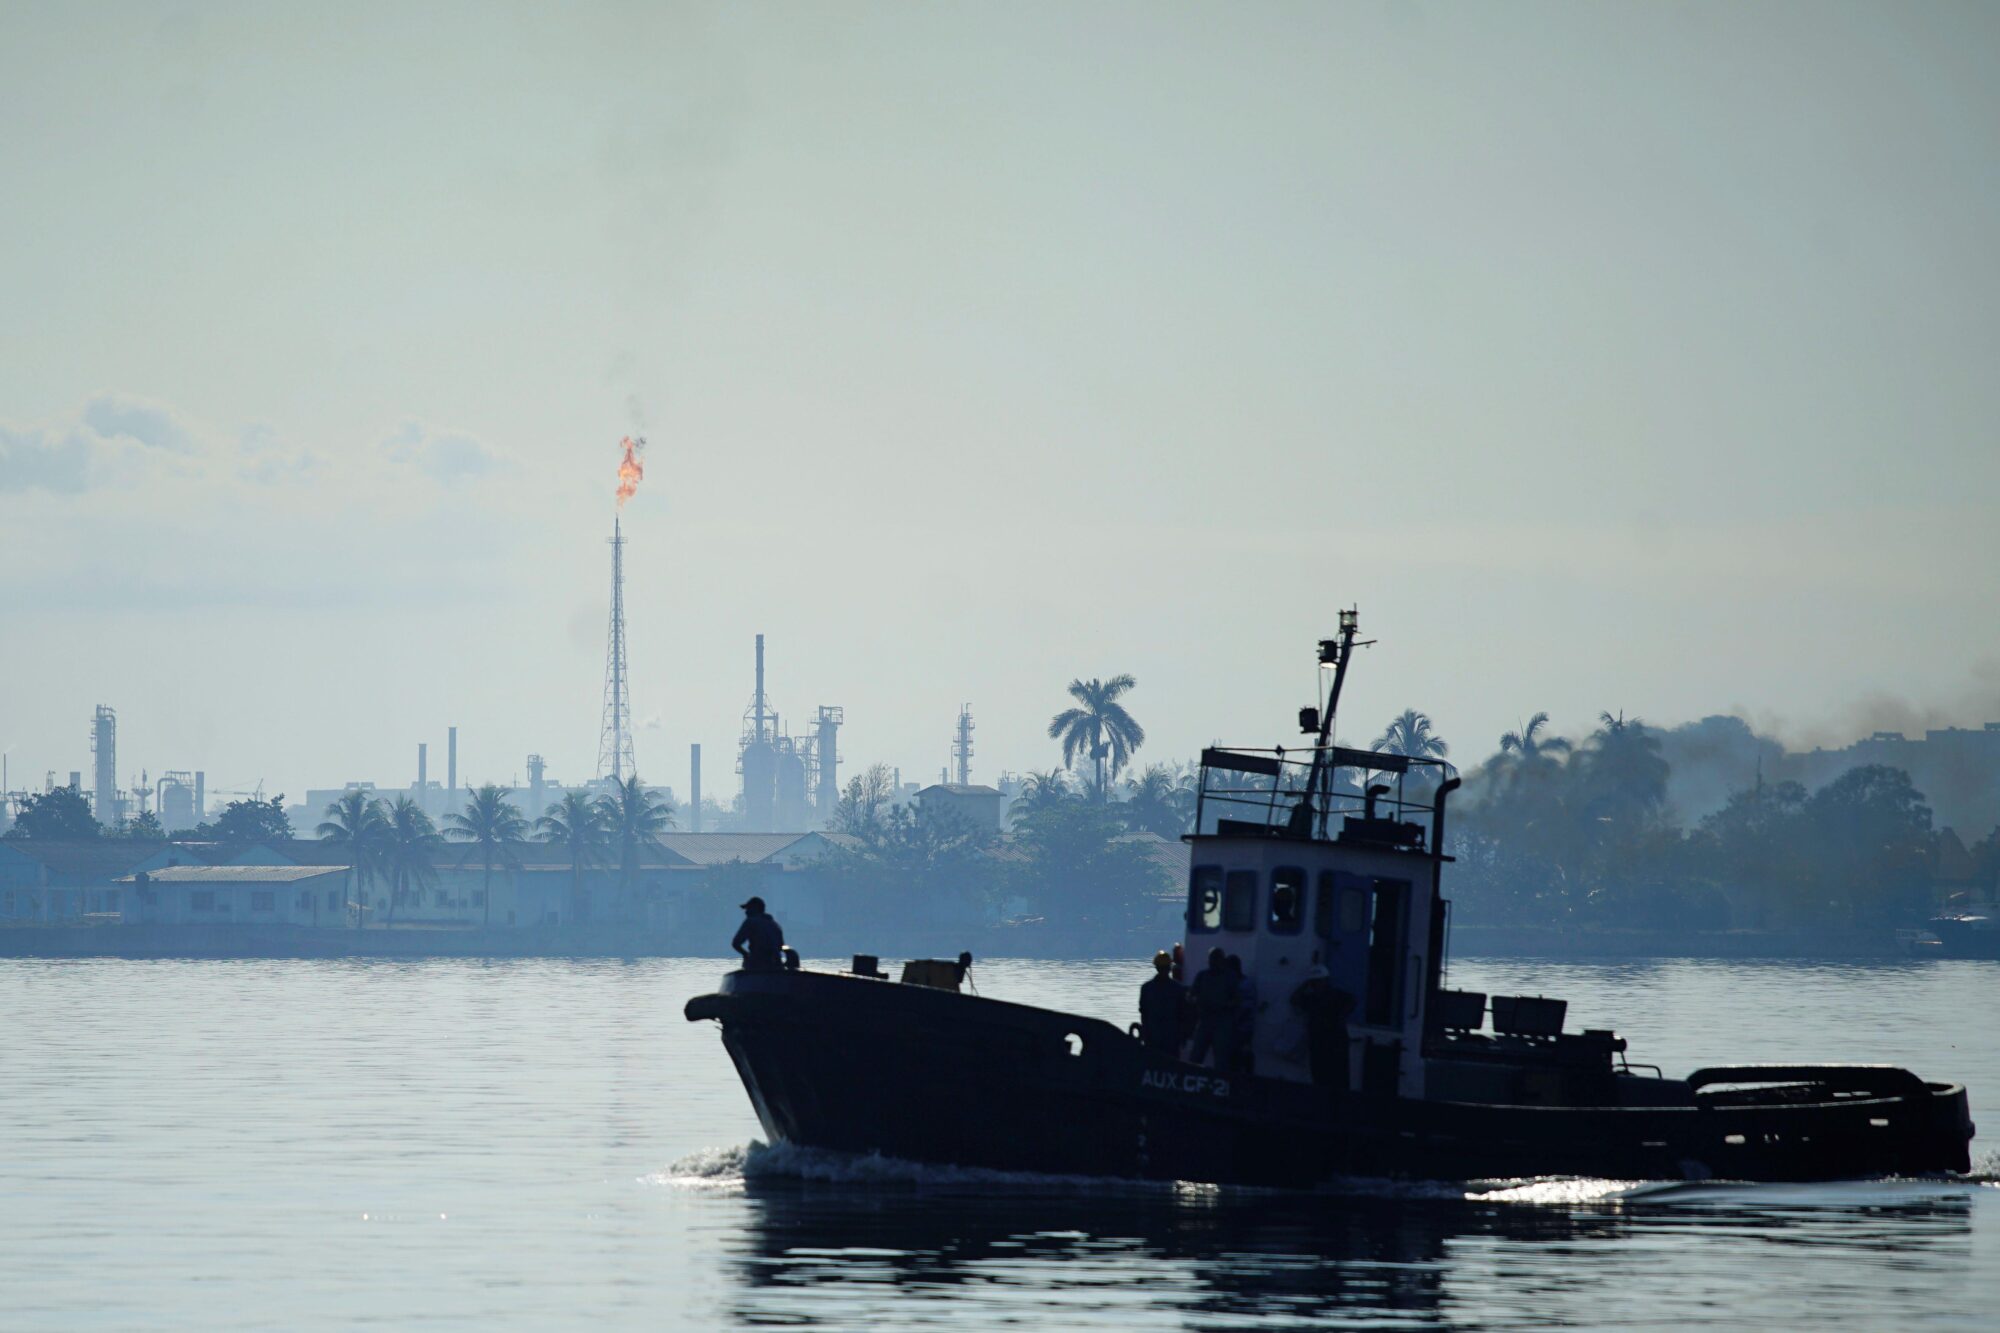 Vista de la refinería de petróleo Nico López (al fondo) mientras un remolcador pasa por la bahía de La Habana, Cuba